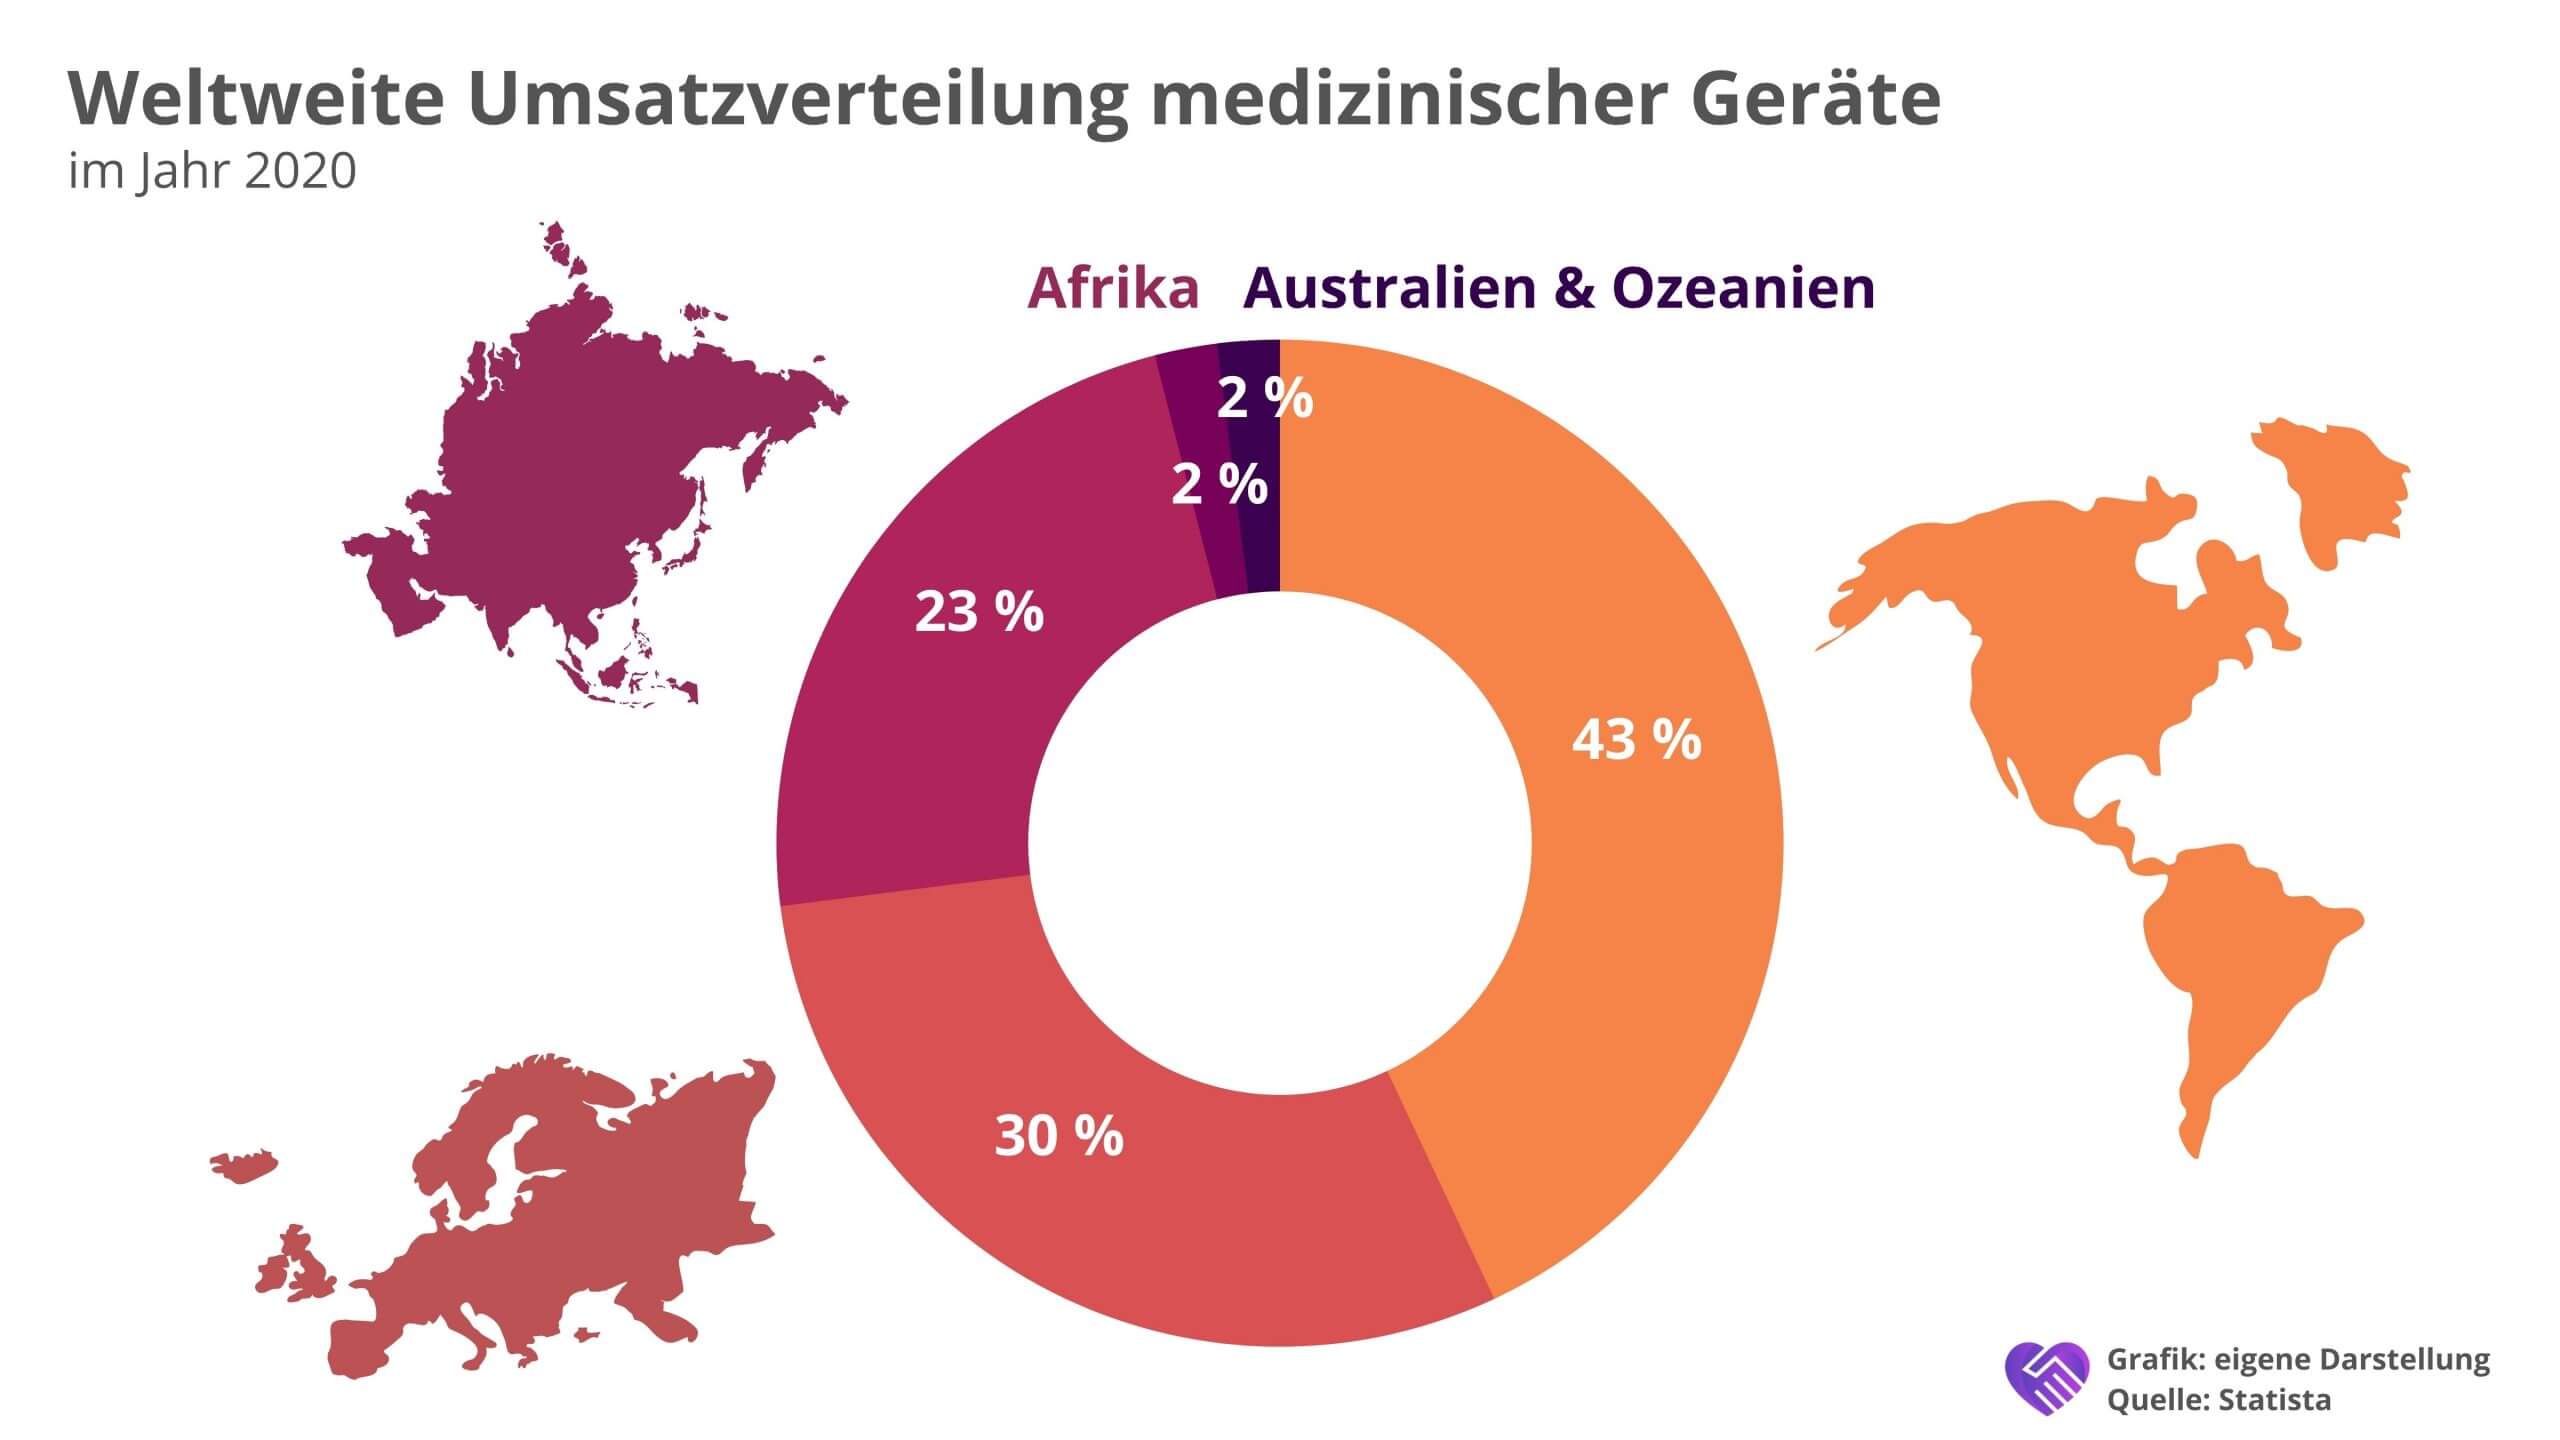 Carl Zeiss Meditec Aktie Analyse – Marktführer aus dem deutschen Mittelstand